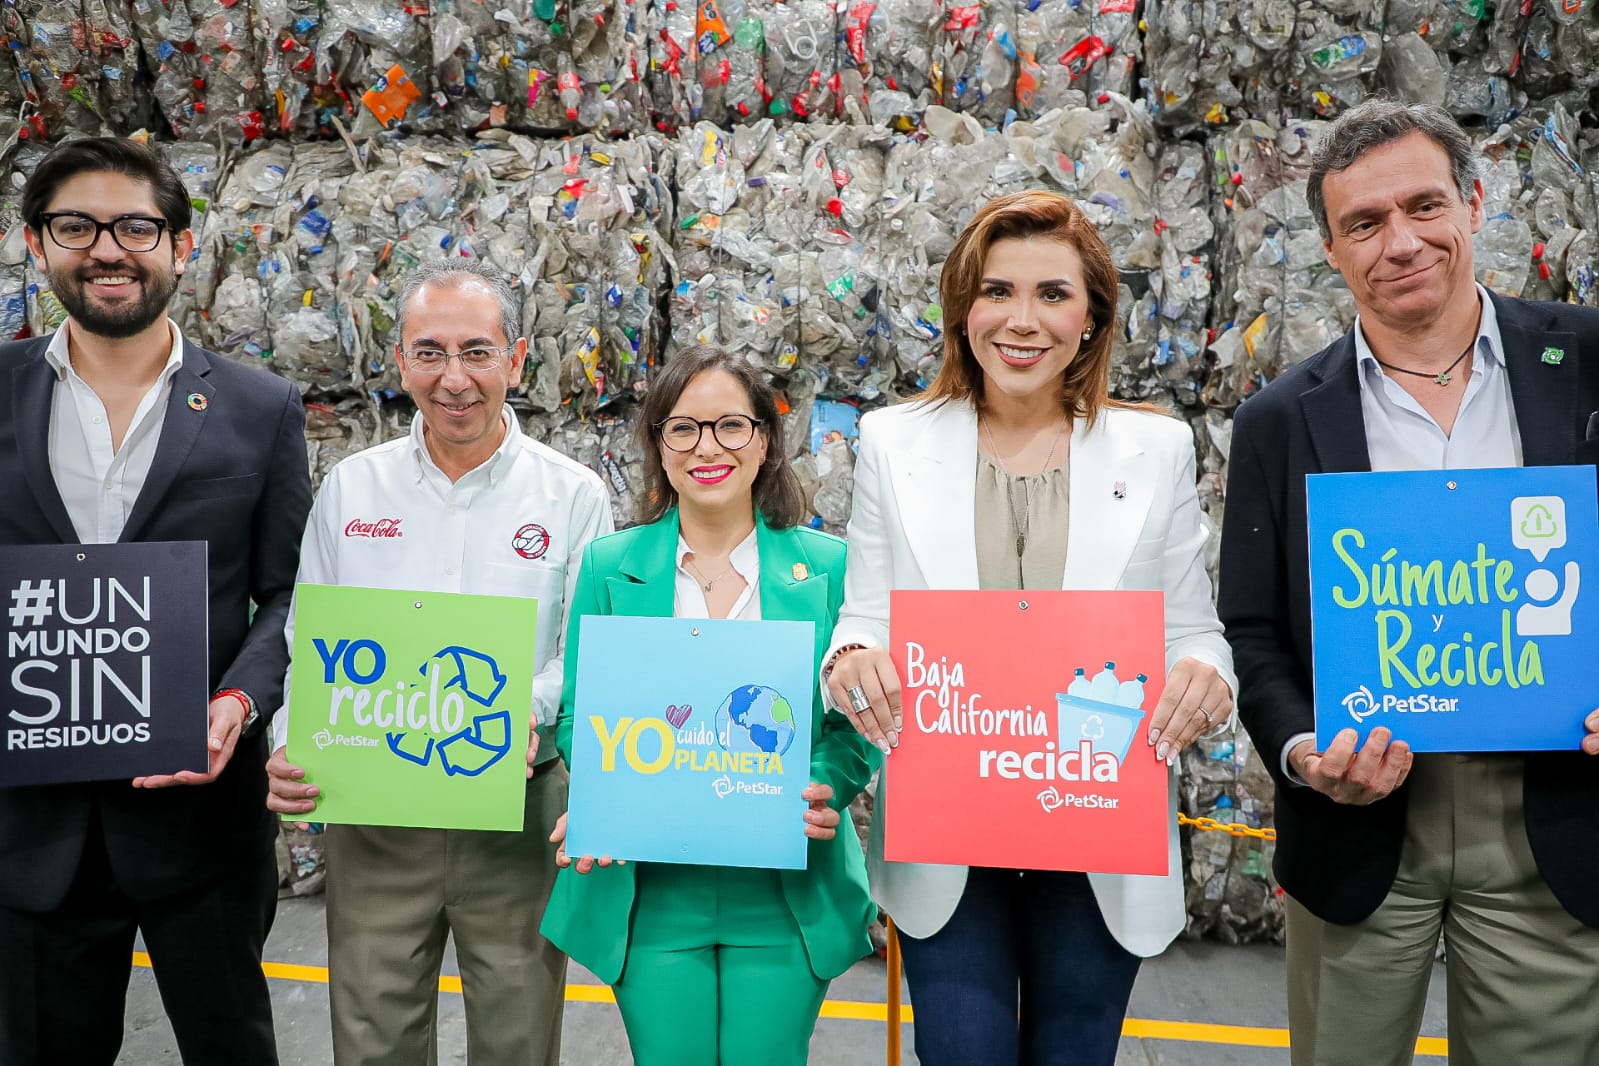 La planta de reciclaje de Petstar protege el medioambiente y genera miles de empleos:  Marina del Pilar Ávila